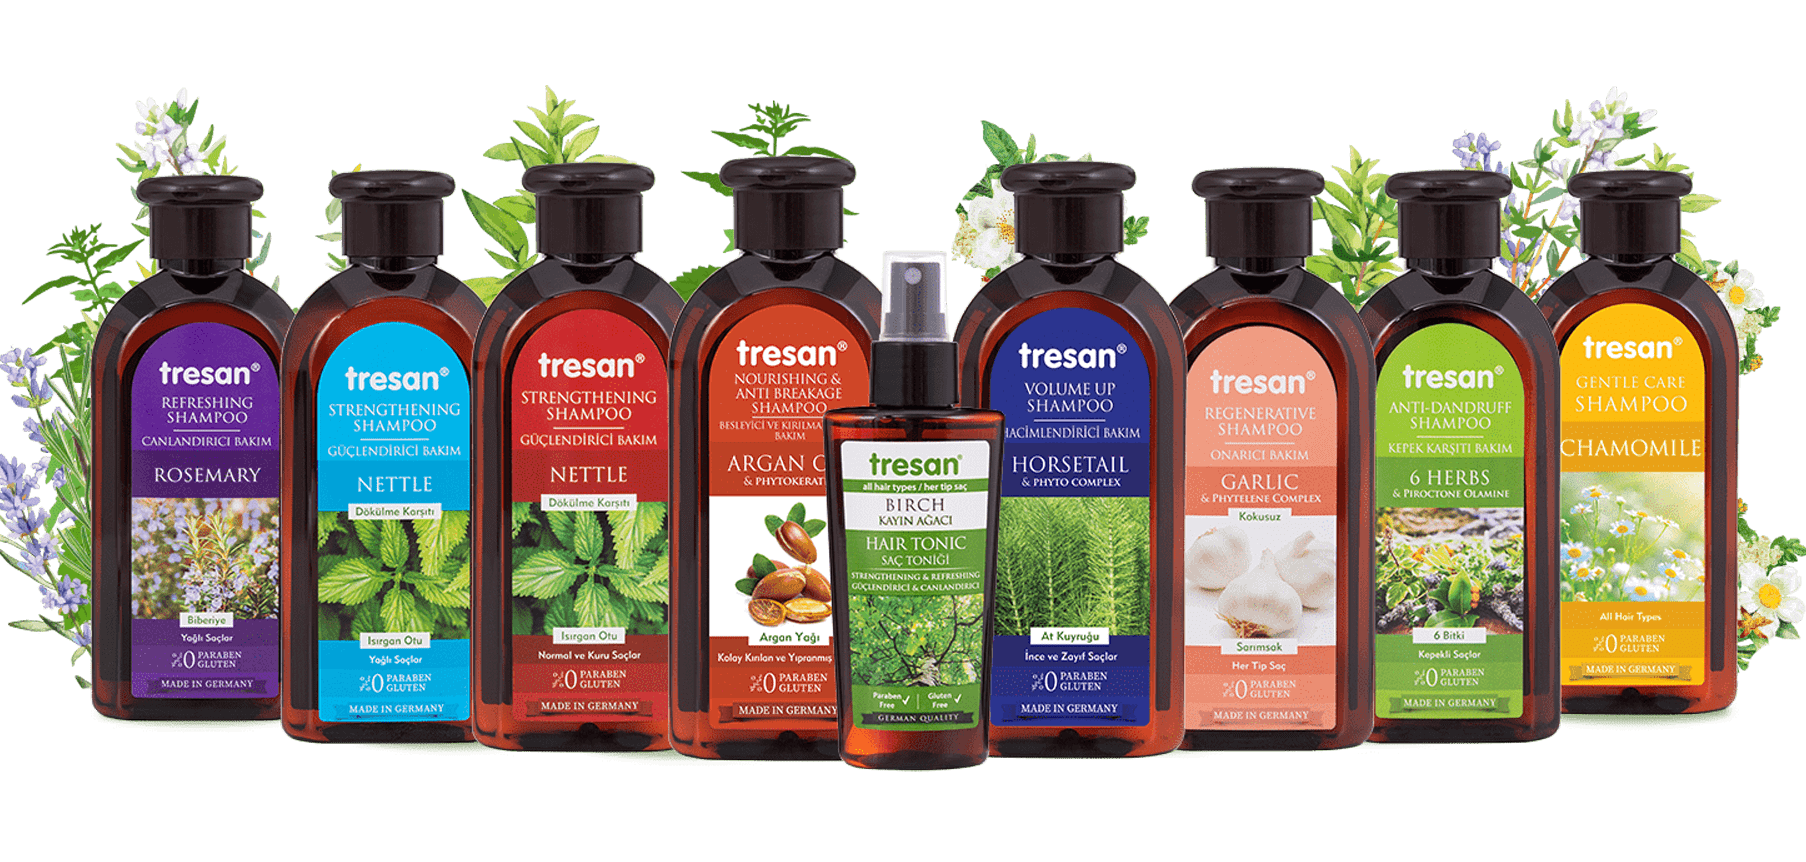 Tresan Champú - Productos para el cuidado del cabello